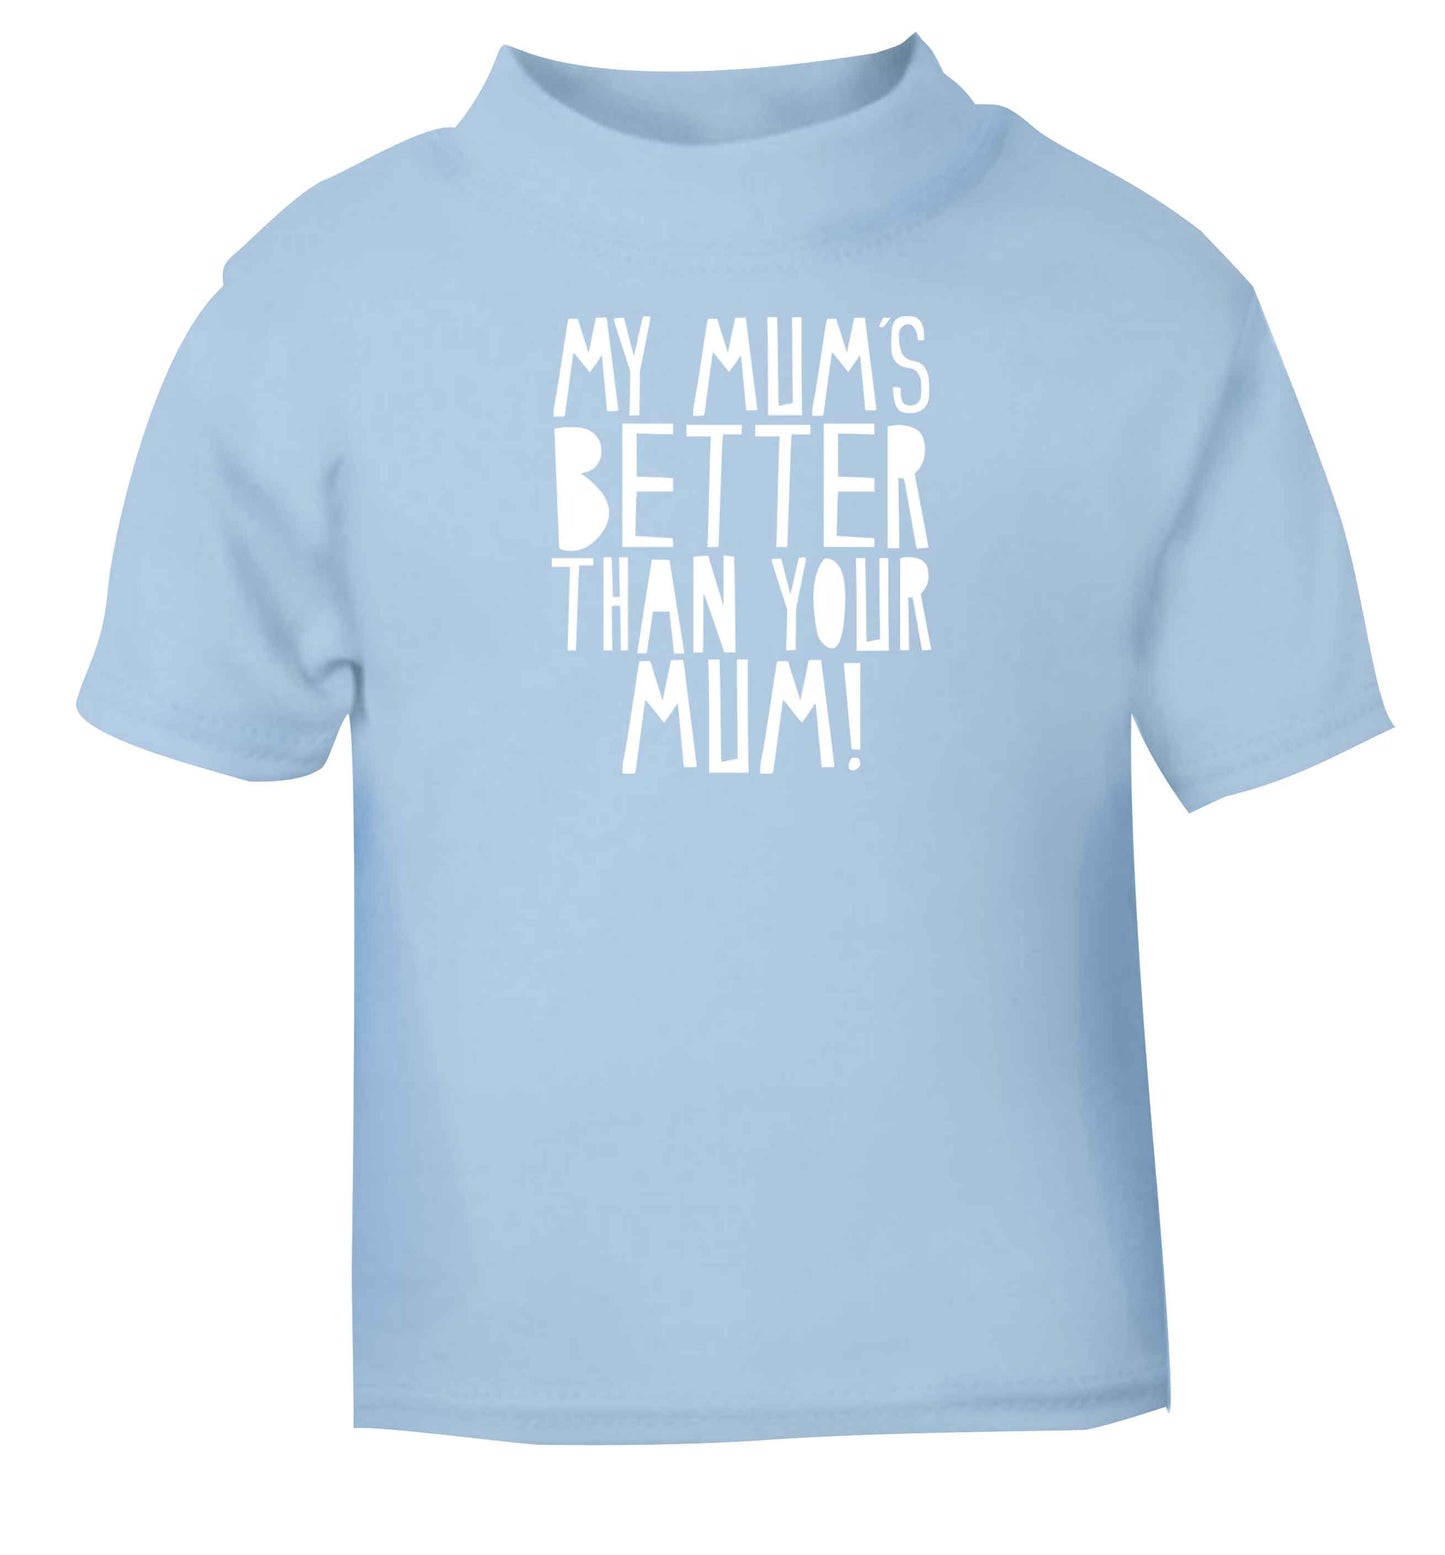 My mum's better than your mum light blue baby toddler Tshirt 2 Years